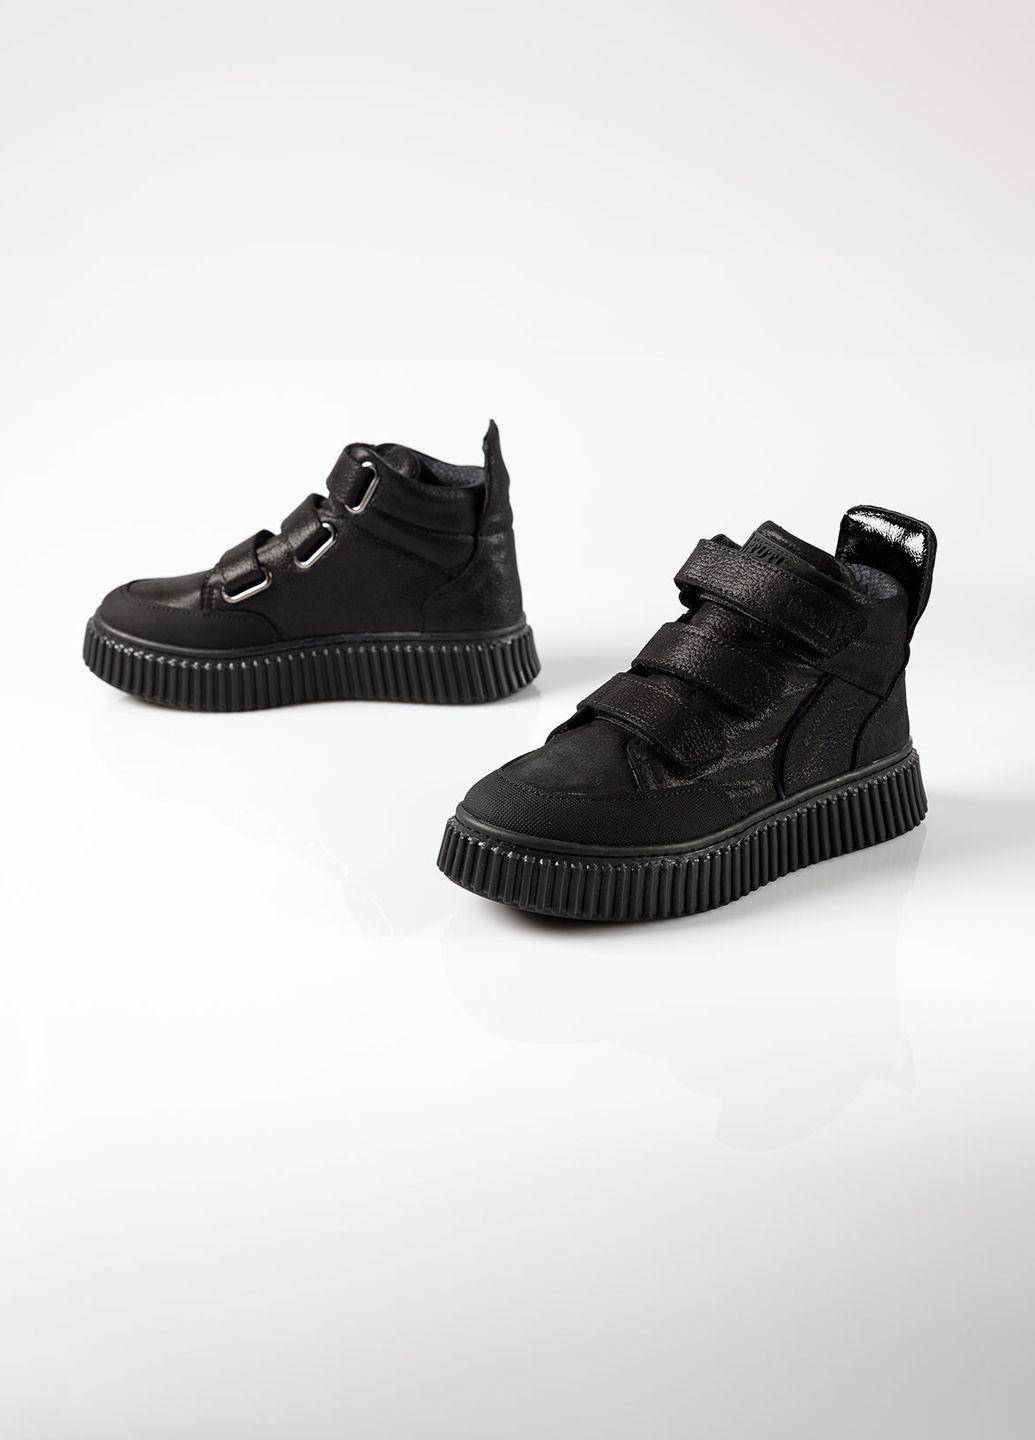 Черные повседневные осенние ботинки на байке из натуральной кожи для девочки 9082 36 24,5см черный 67933 Tutubi